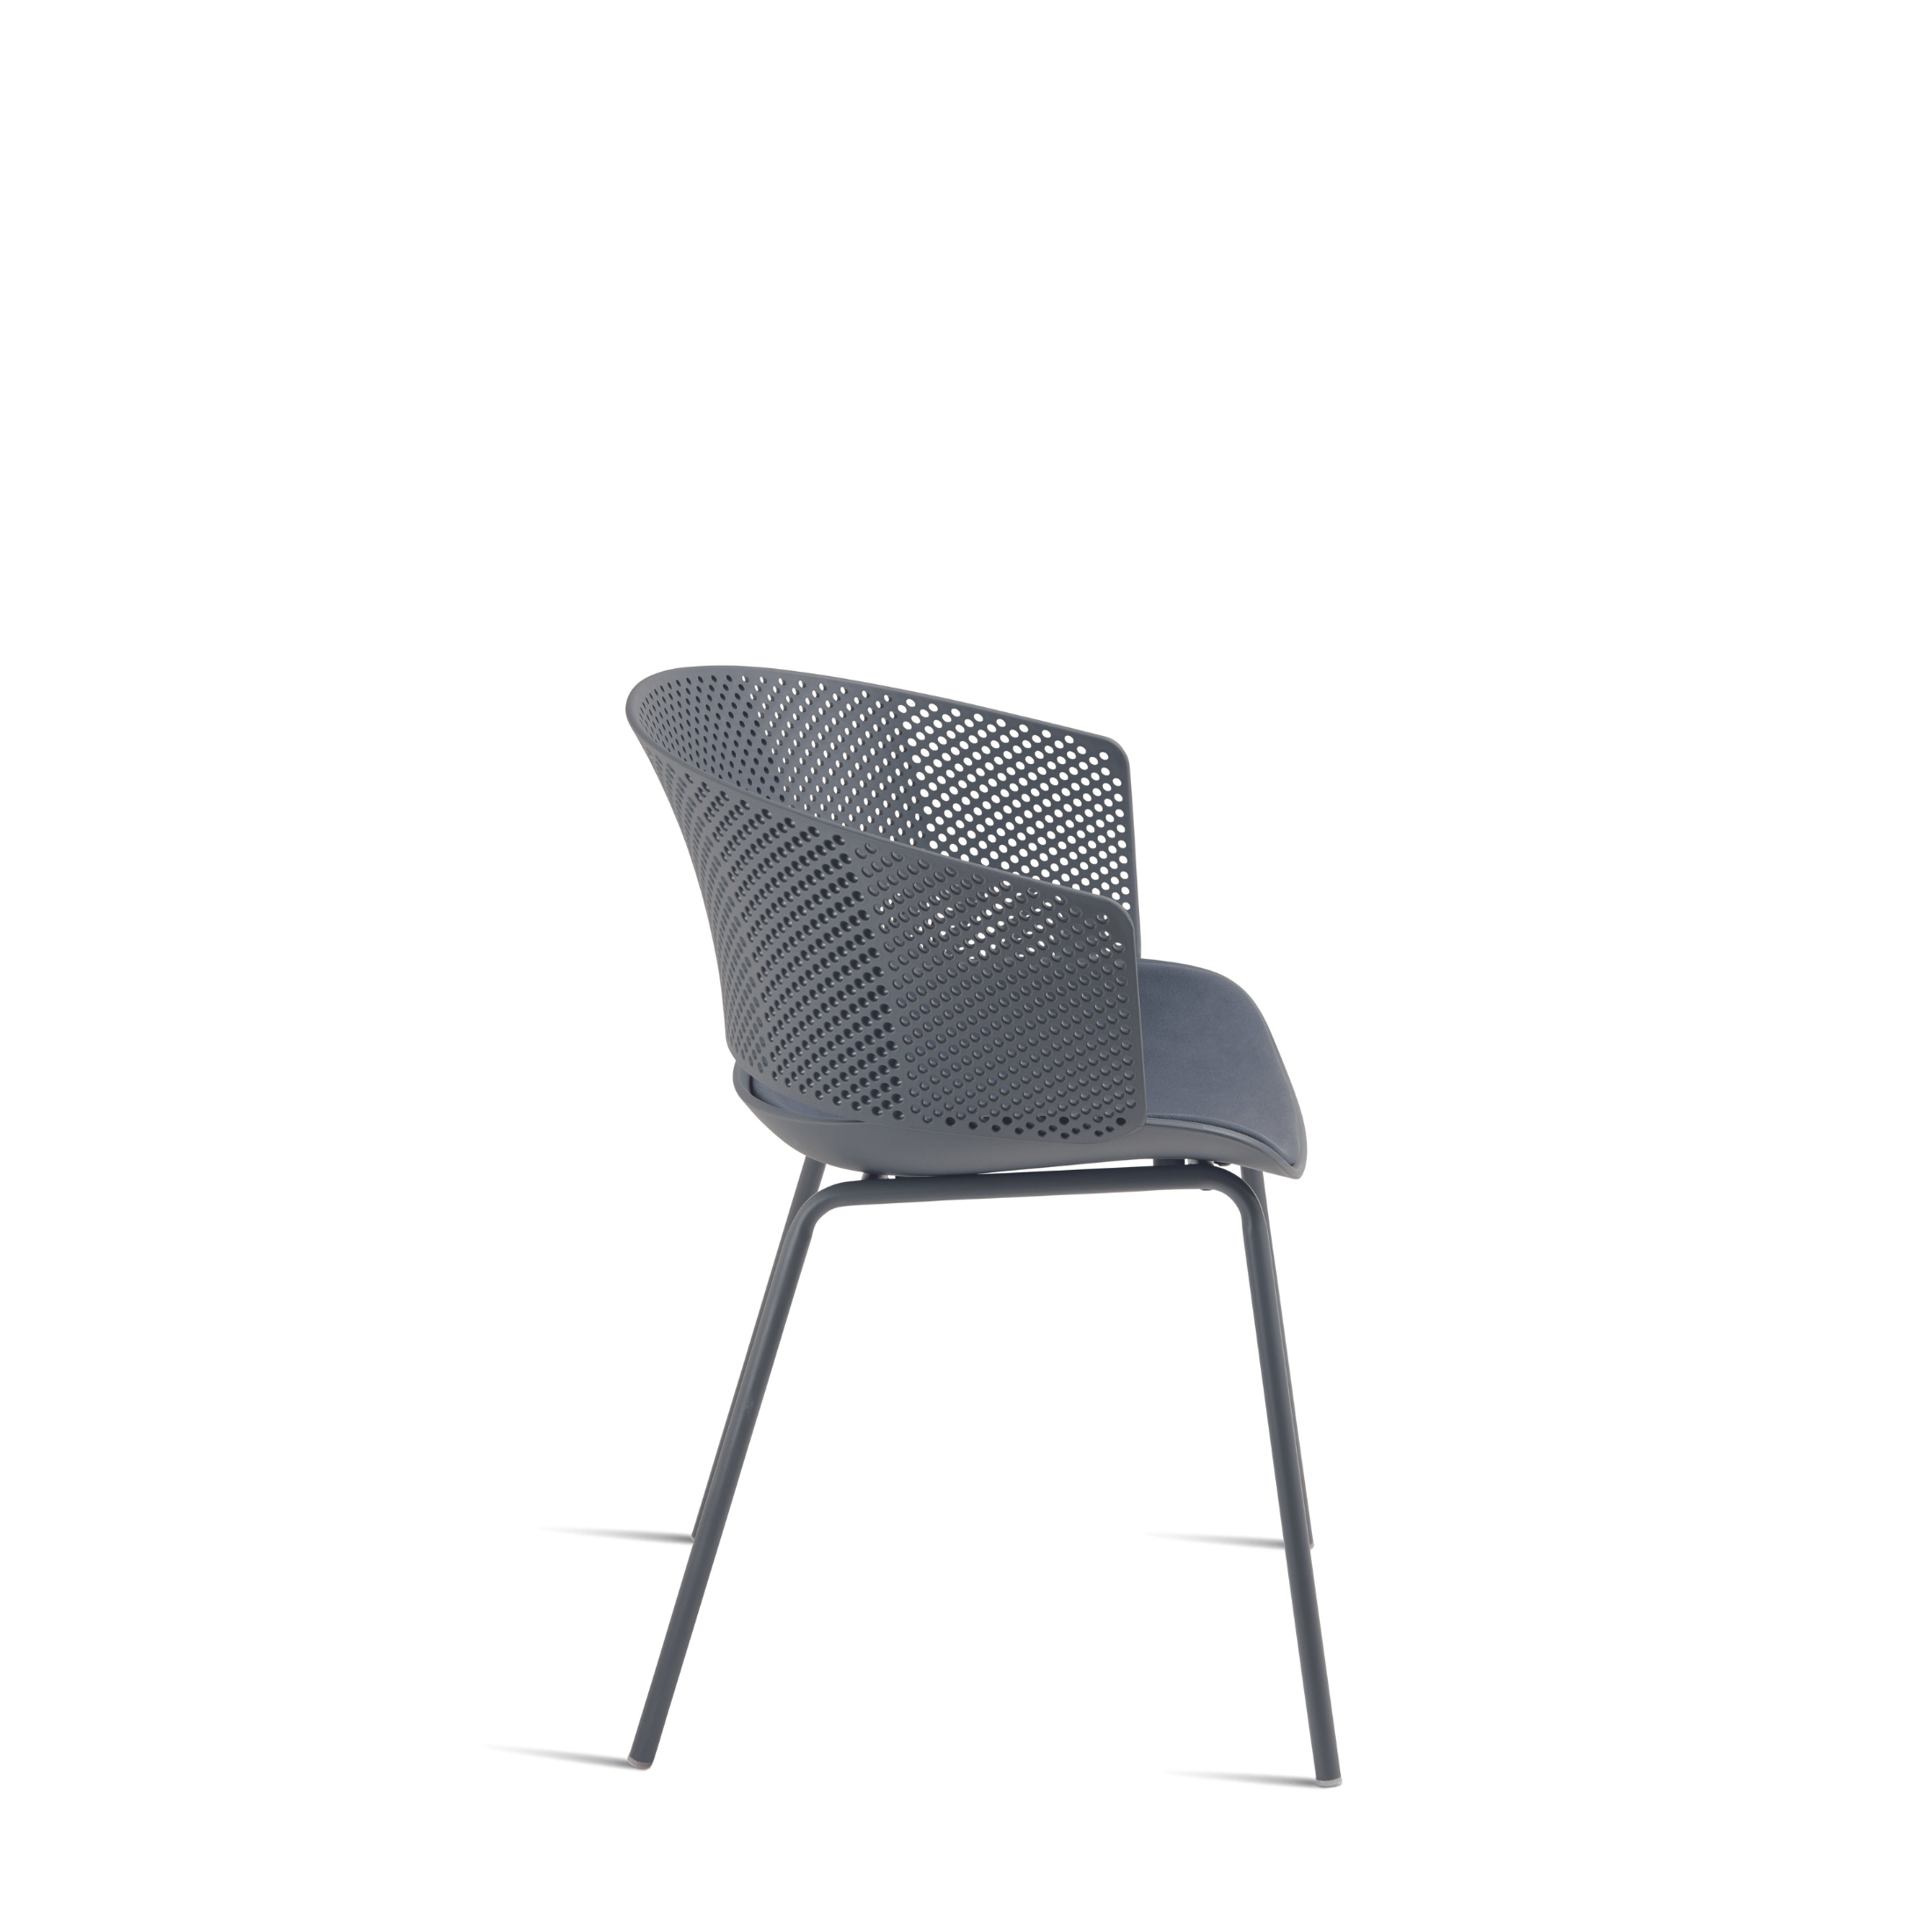 Silla moderna de polipropileno "Cutolo" con asiento acolchado 59x53 cm 78h